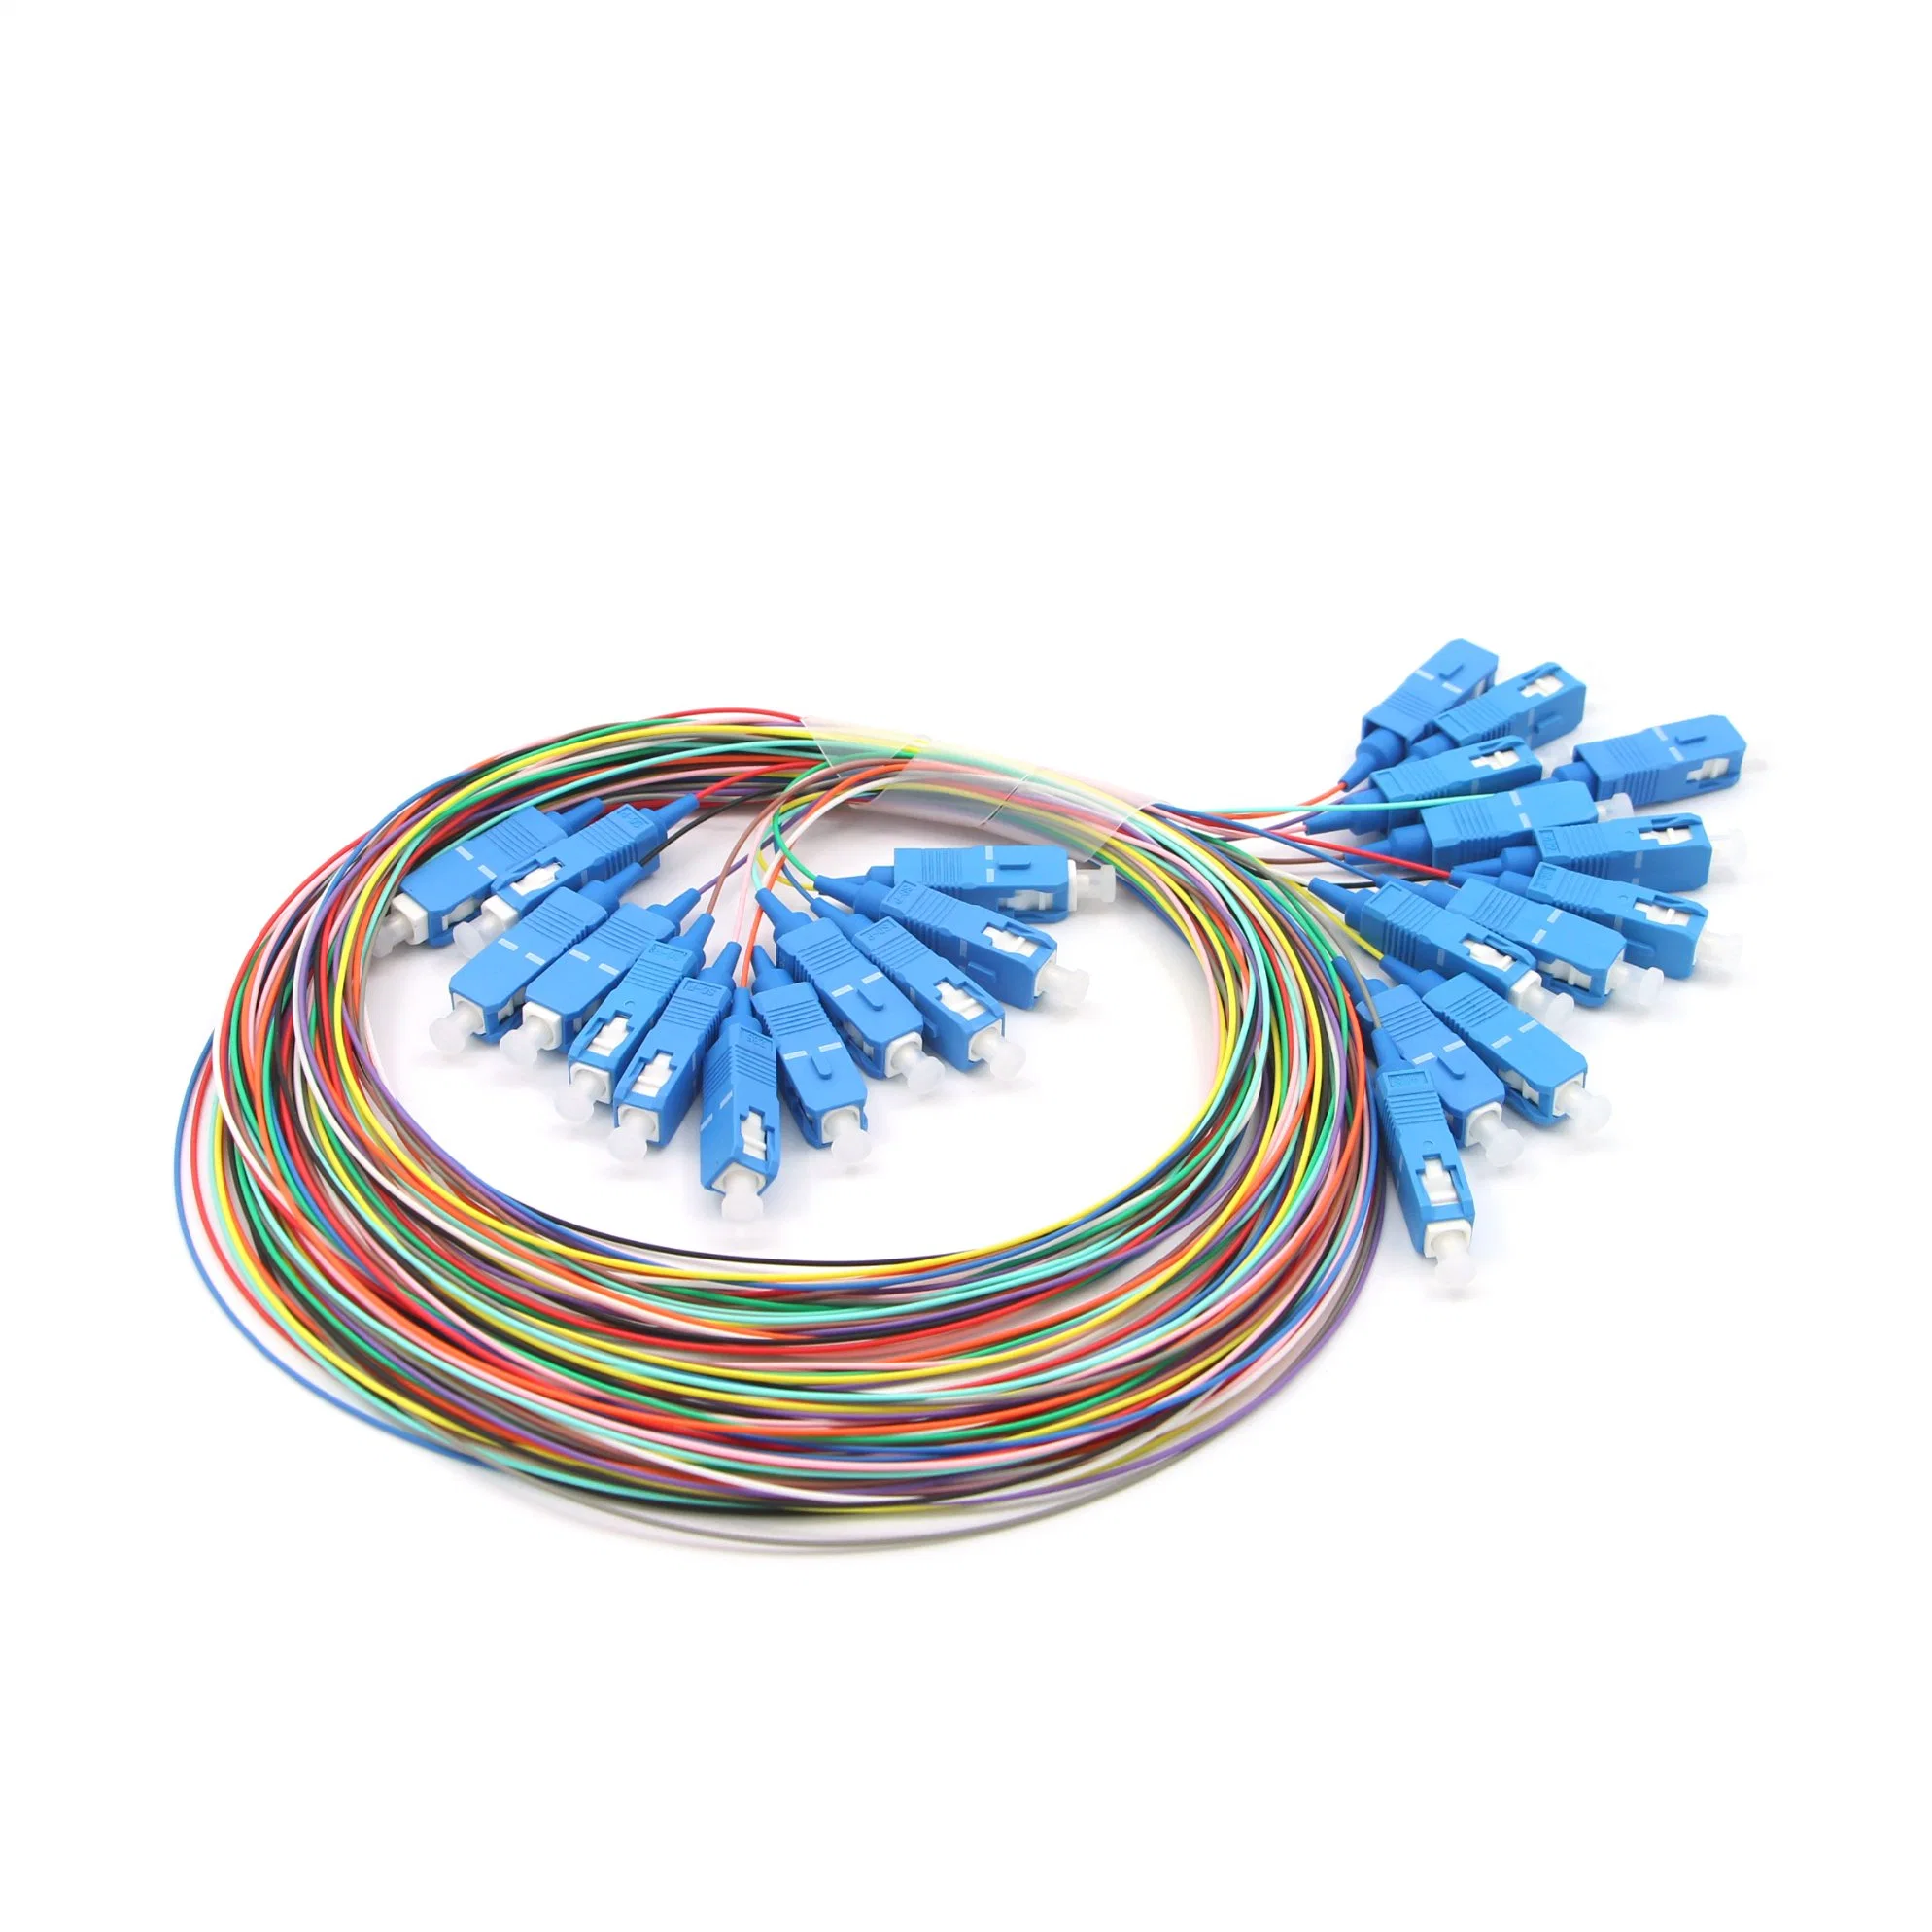 Sc 12 Colors Fiber Optic Pigtail Cable